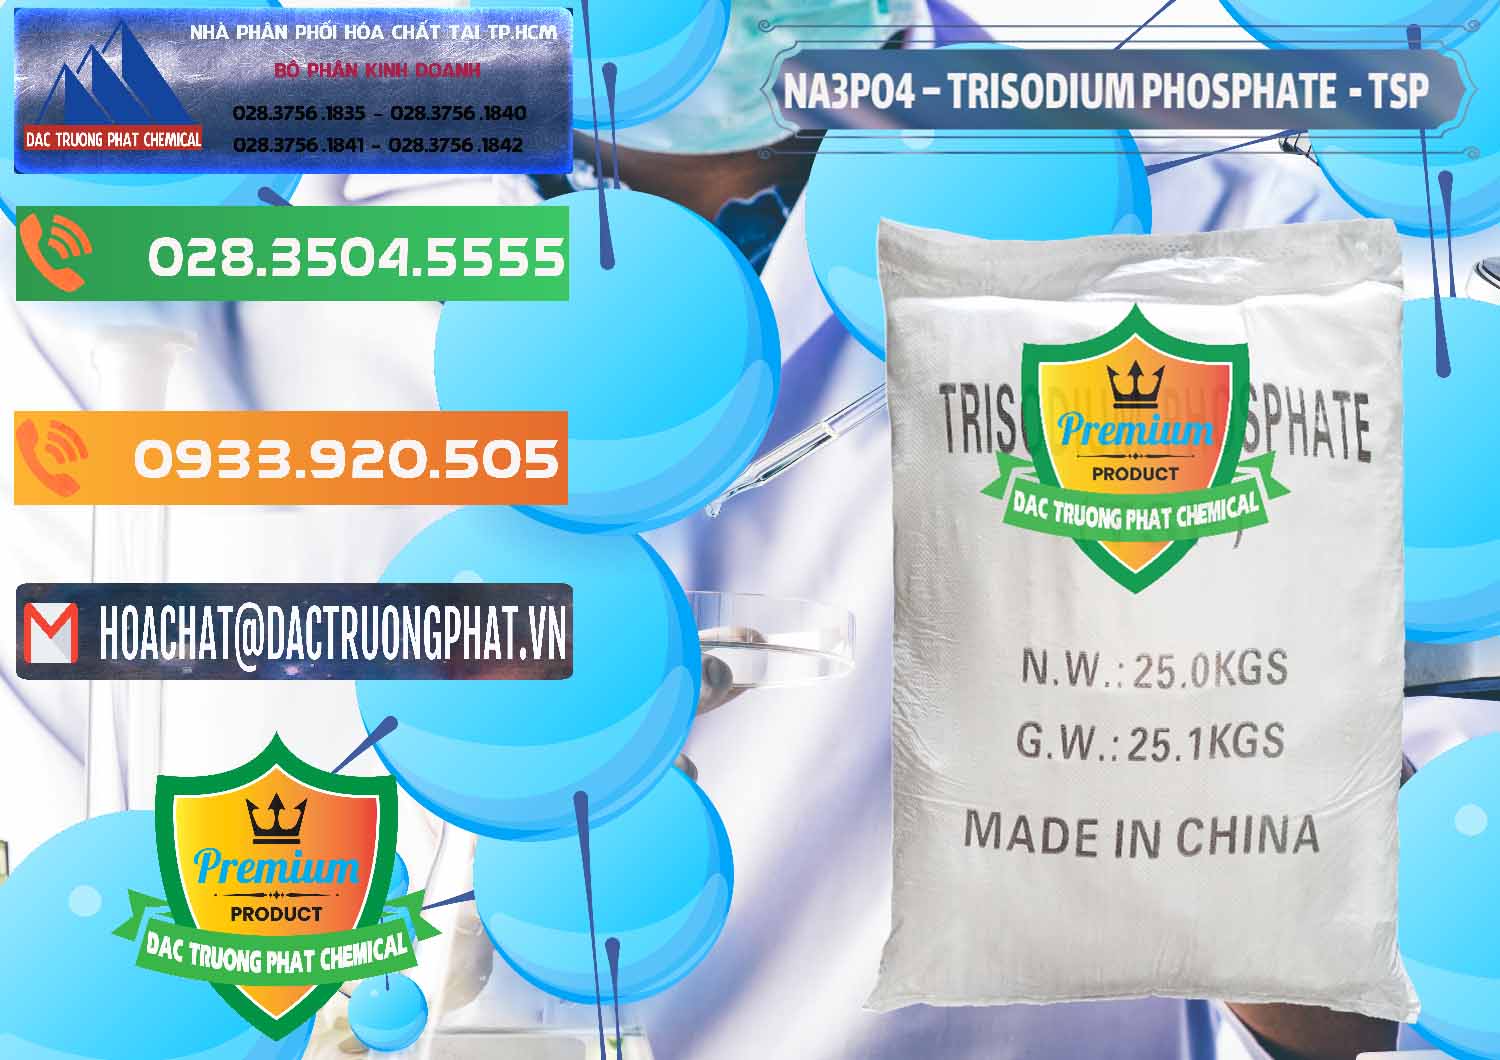 Đơn vị chuyên cung cấp _ bán Na3PO4 – Trisodium Phosphate Trung Quốc China TSP - 0103 - Đơn vị chuyên kinh doanh ( phân phối ) hóa chất tại TP.HCM - hoachatxulynuoc.com.vn